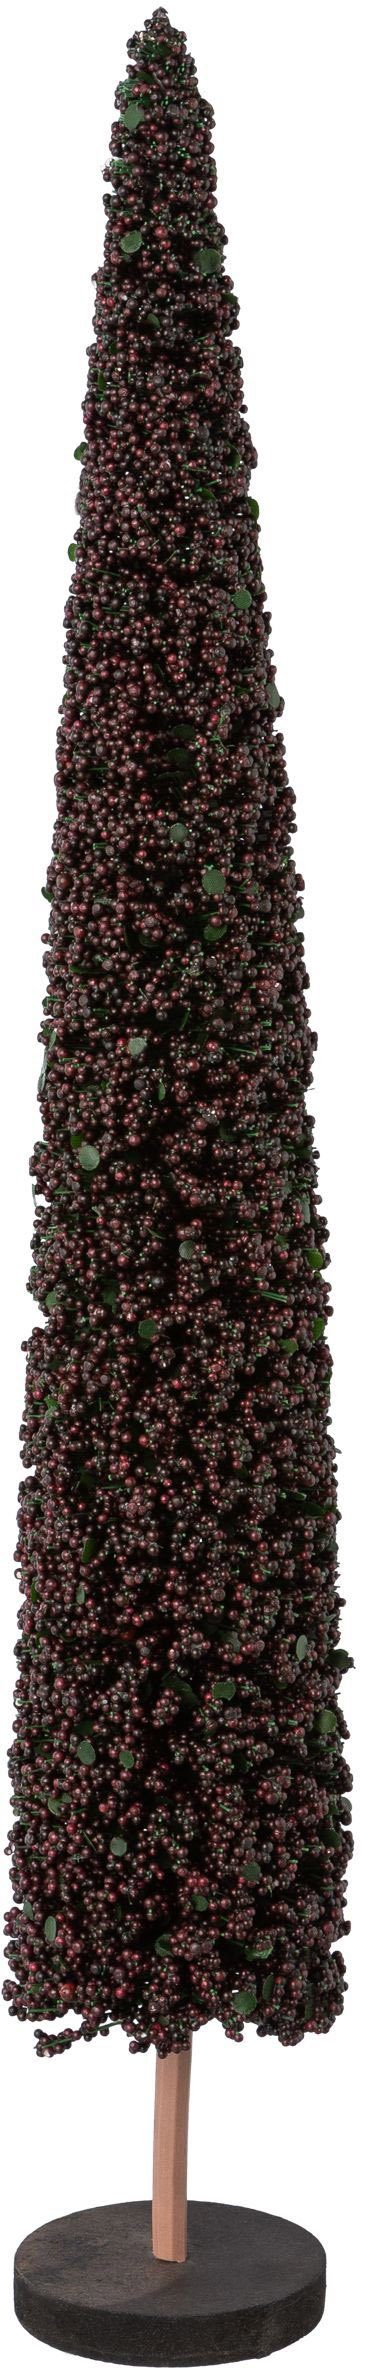 Creativ deco Dekobaum Weihnachtsdeko (1 St), auf hochwertiger Holzbase, mit Perlen verziert, Höhe 60 cm dunkelblau